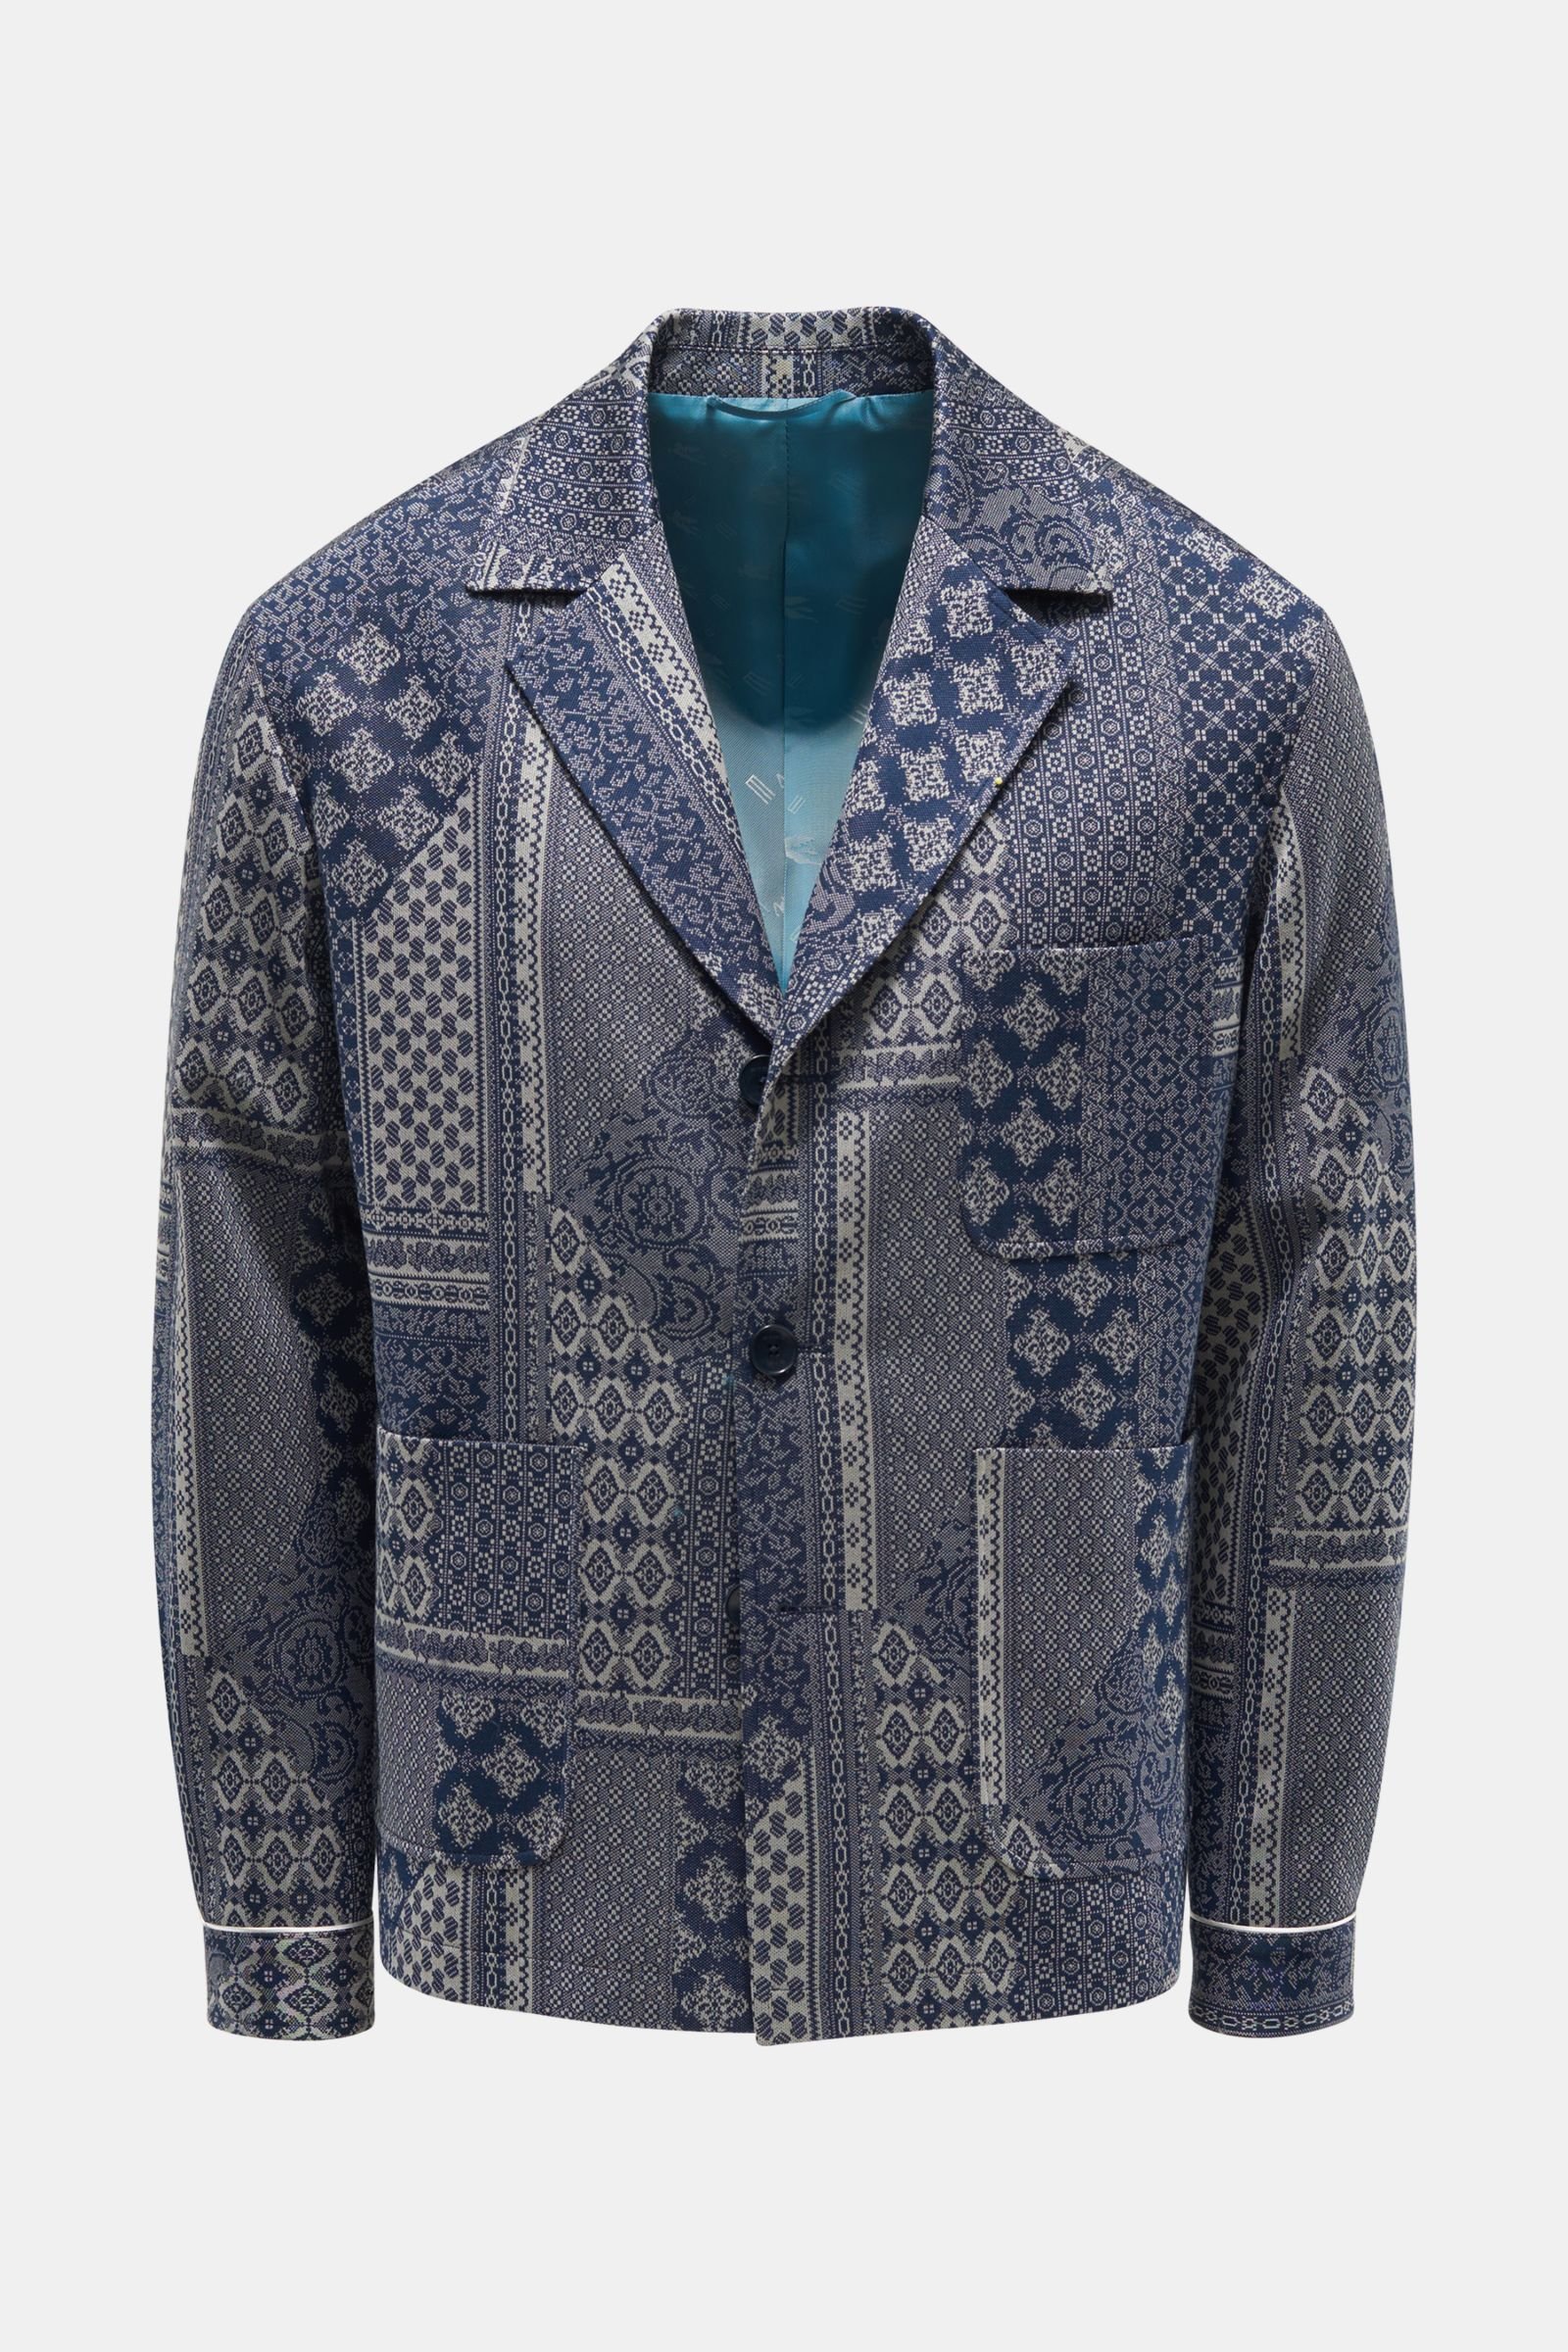 Jersey smart-casual jacket navy/light grey patterned